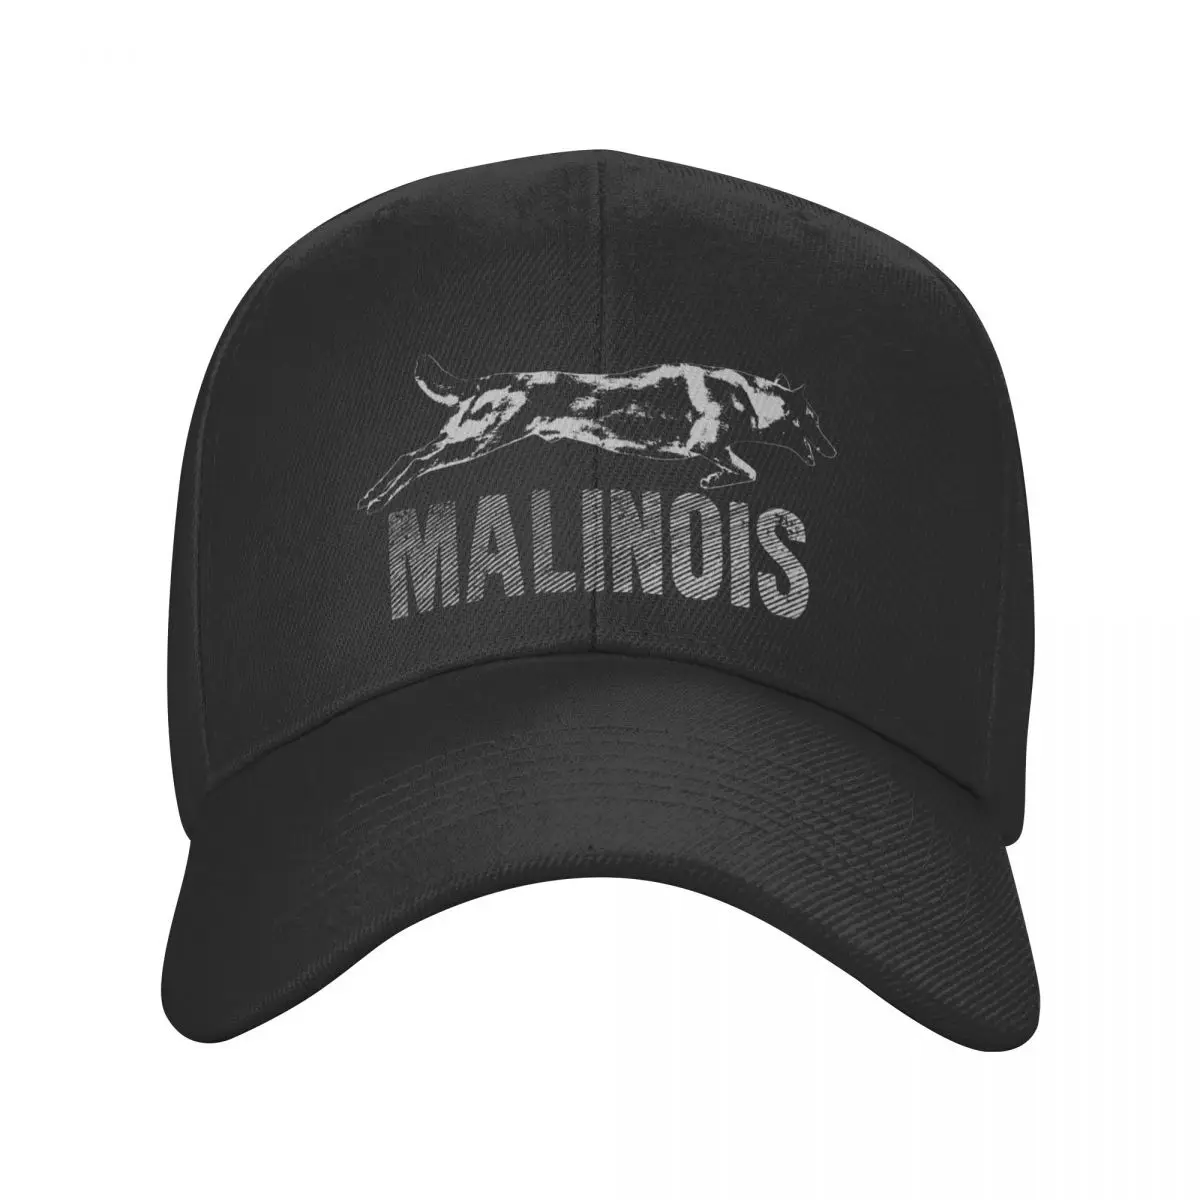 

Belgian Shepherd Malinois Baseball Cap Men Women Personalized Adjustable Adult Mechelaar Dog Dad Hat Outdoor Snapback Caps